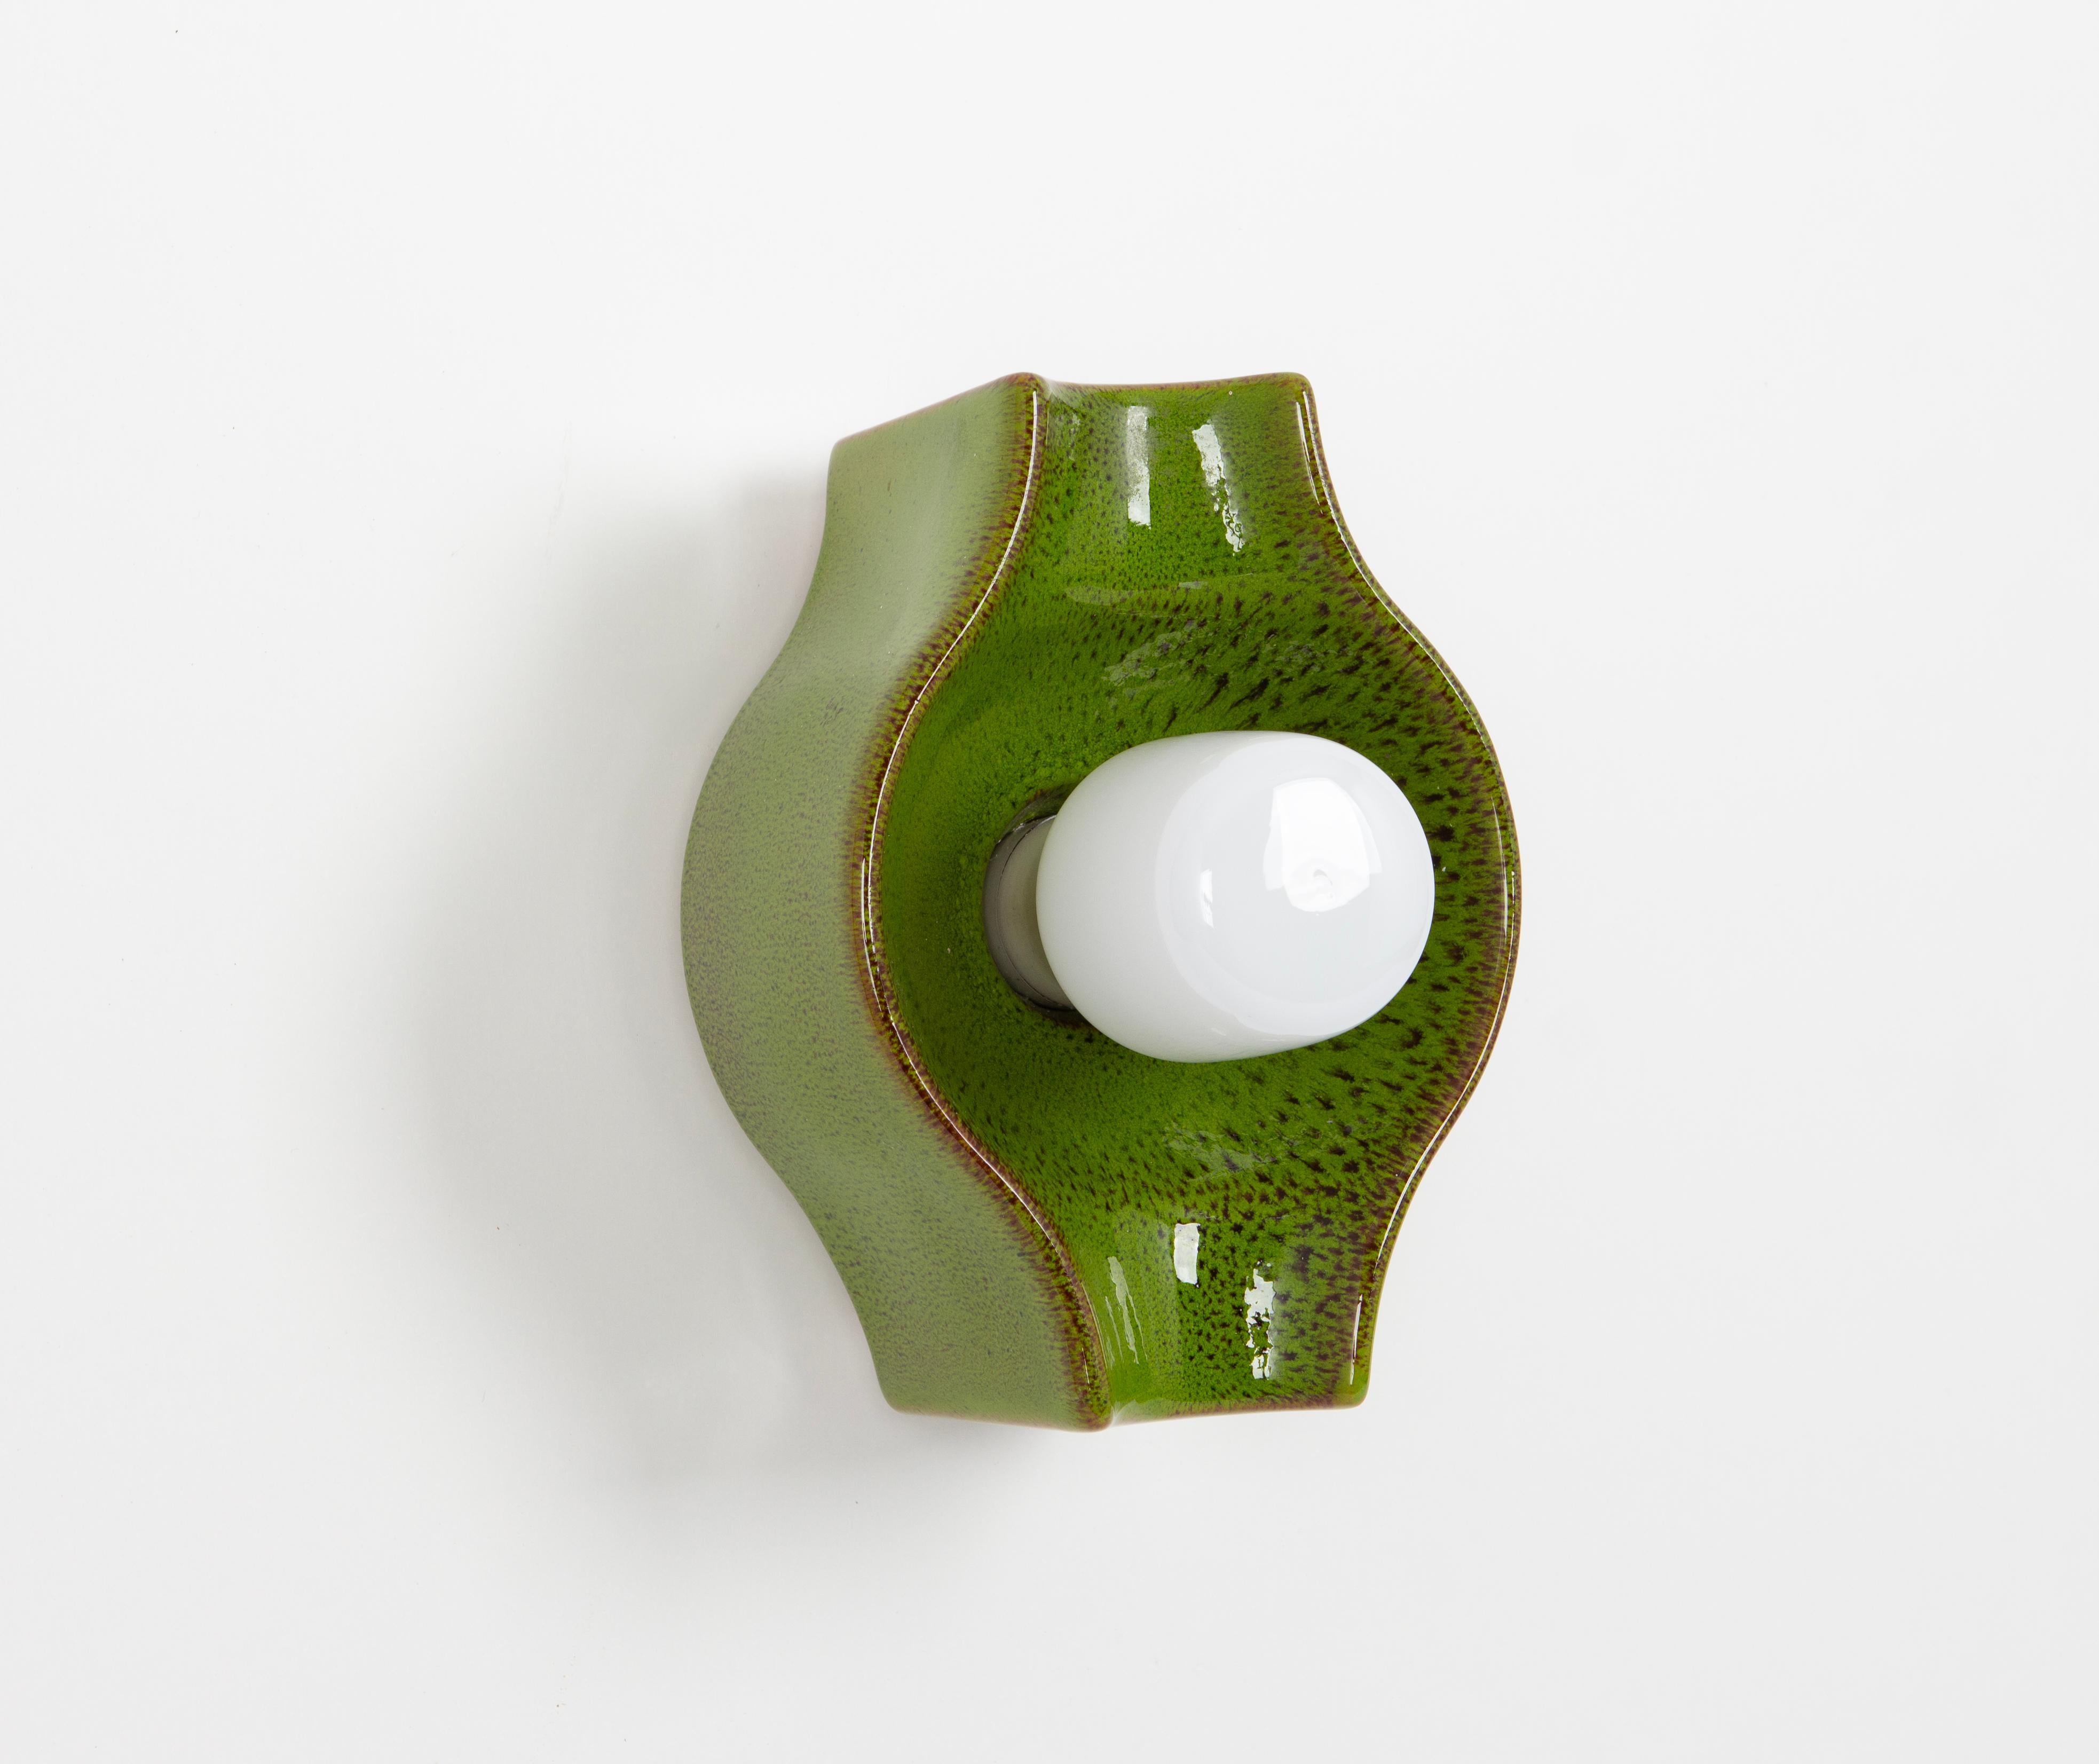 Grüne Keramik-Wandleuchte Sputnik, entworfen von Cari Zalloni Deutschland, 1970er Jahre

Schwere Qualität und in sehr gutem Zustand. Gereinigt, gut verkabelt und einsatzbereit. 

Die Leuchte benötigt 1 x E27 Standard-Glühbirne mit je 100W max.